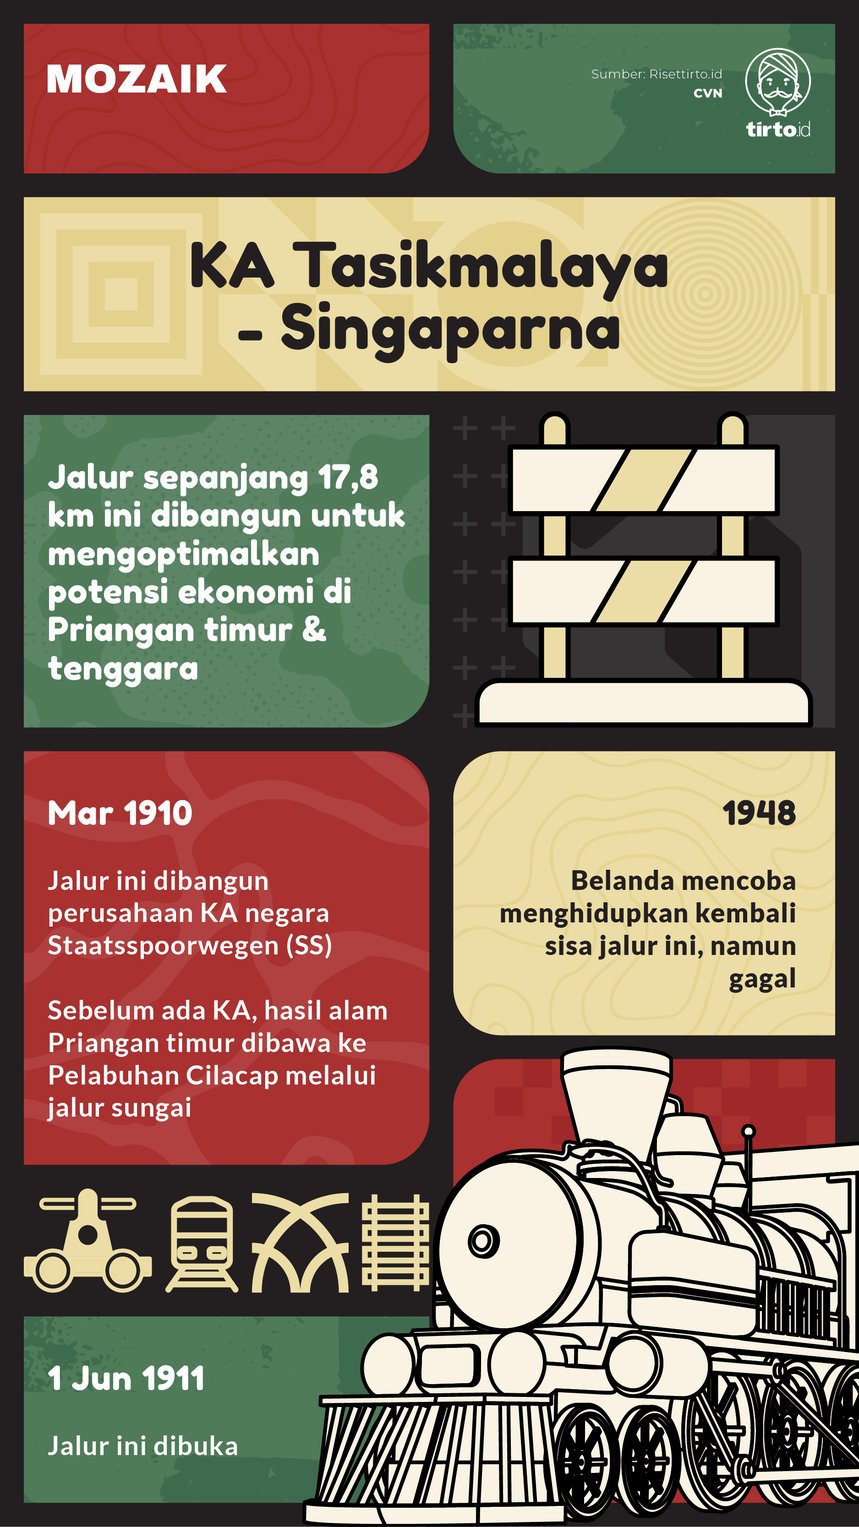 Infografik Mozaik KA Tasikmalaya-Singaparna